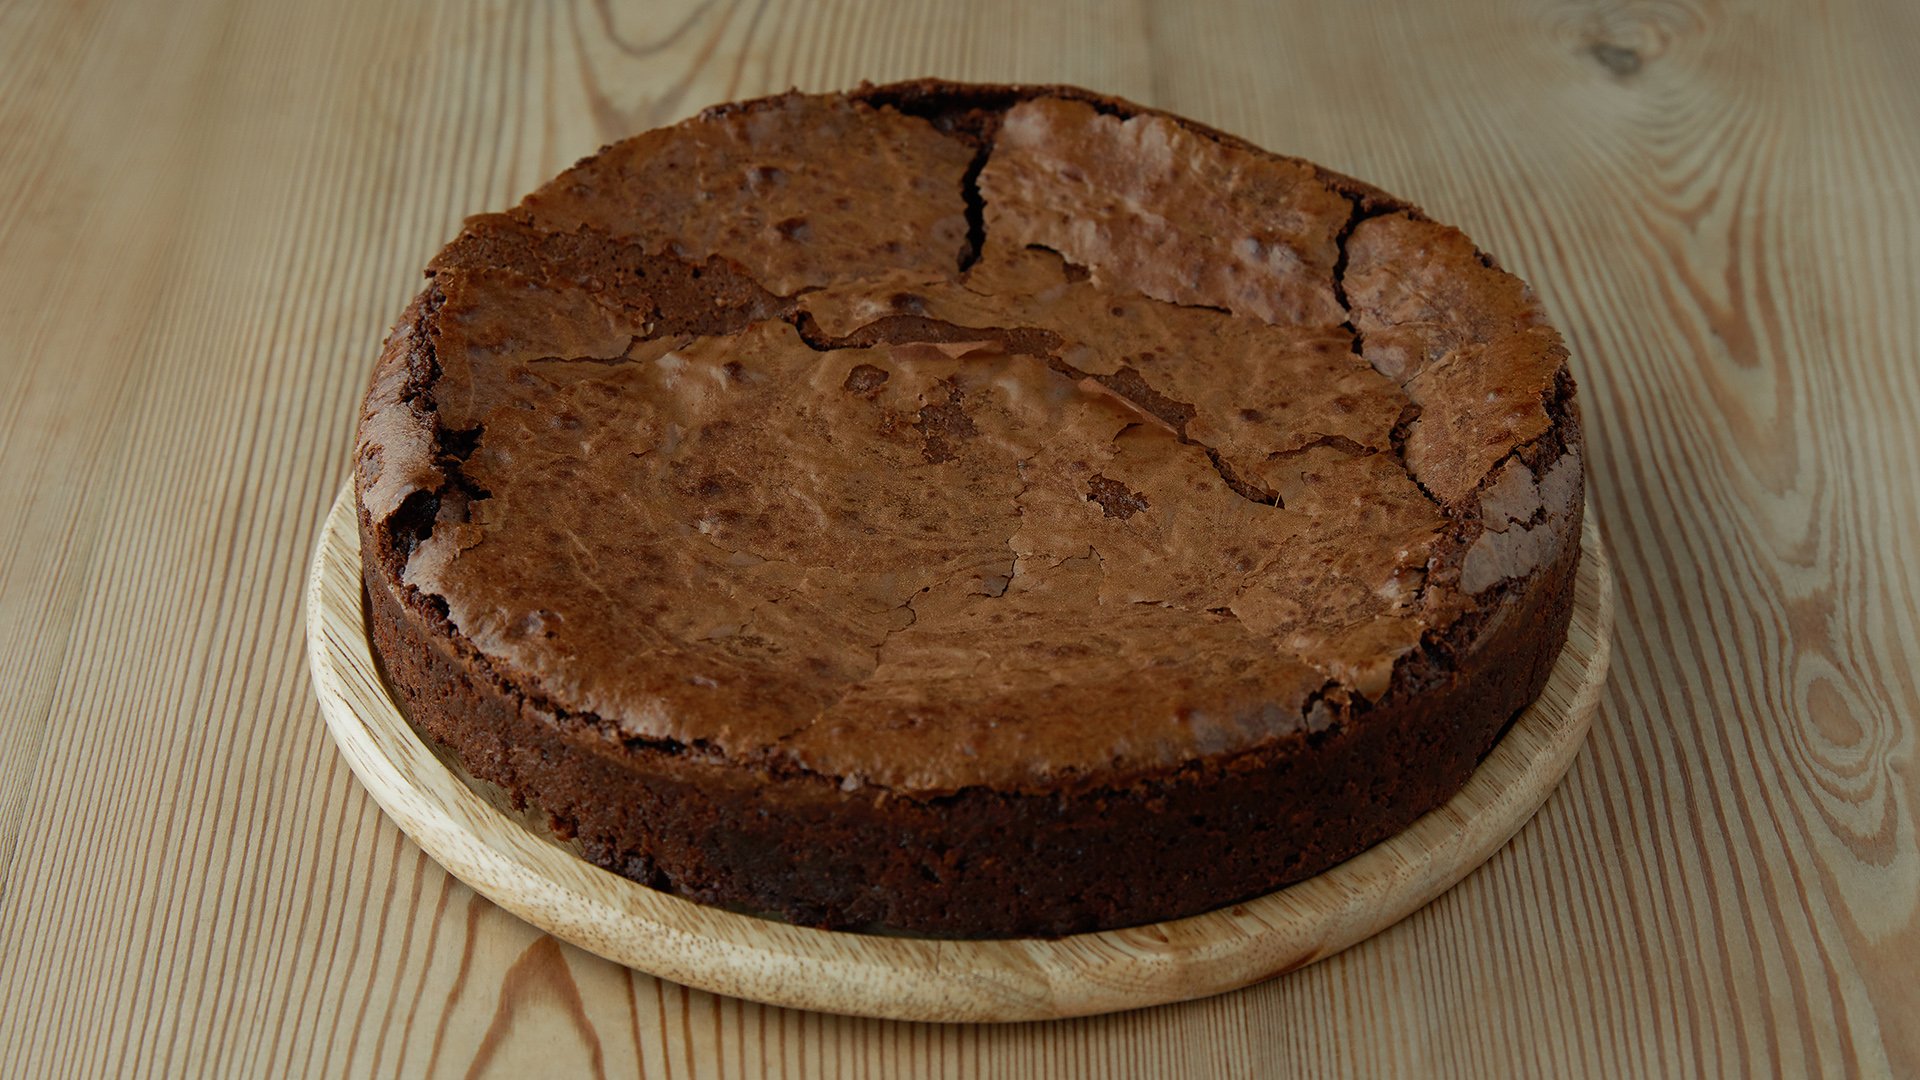 Le Pain Quotidien Flourless Chocolate Cake